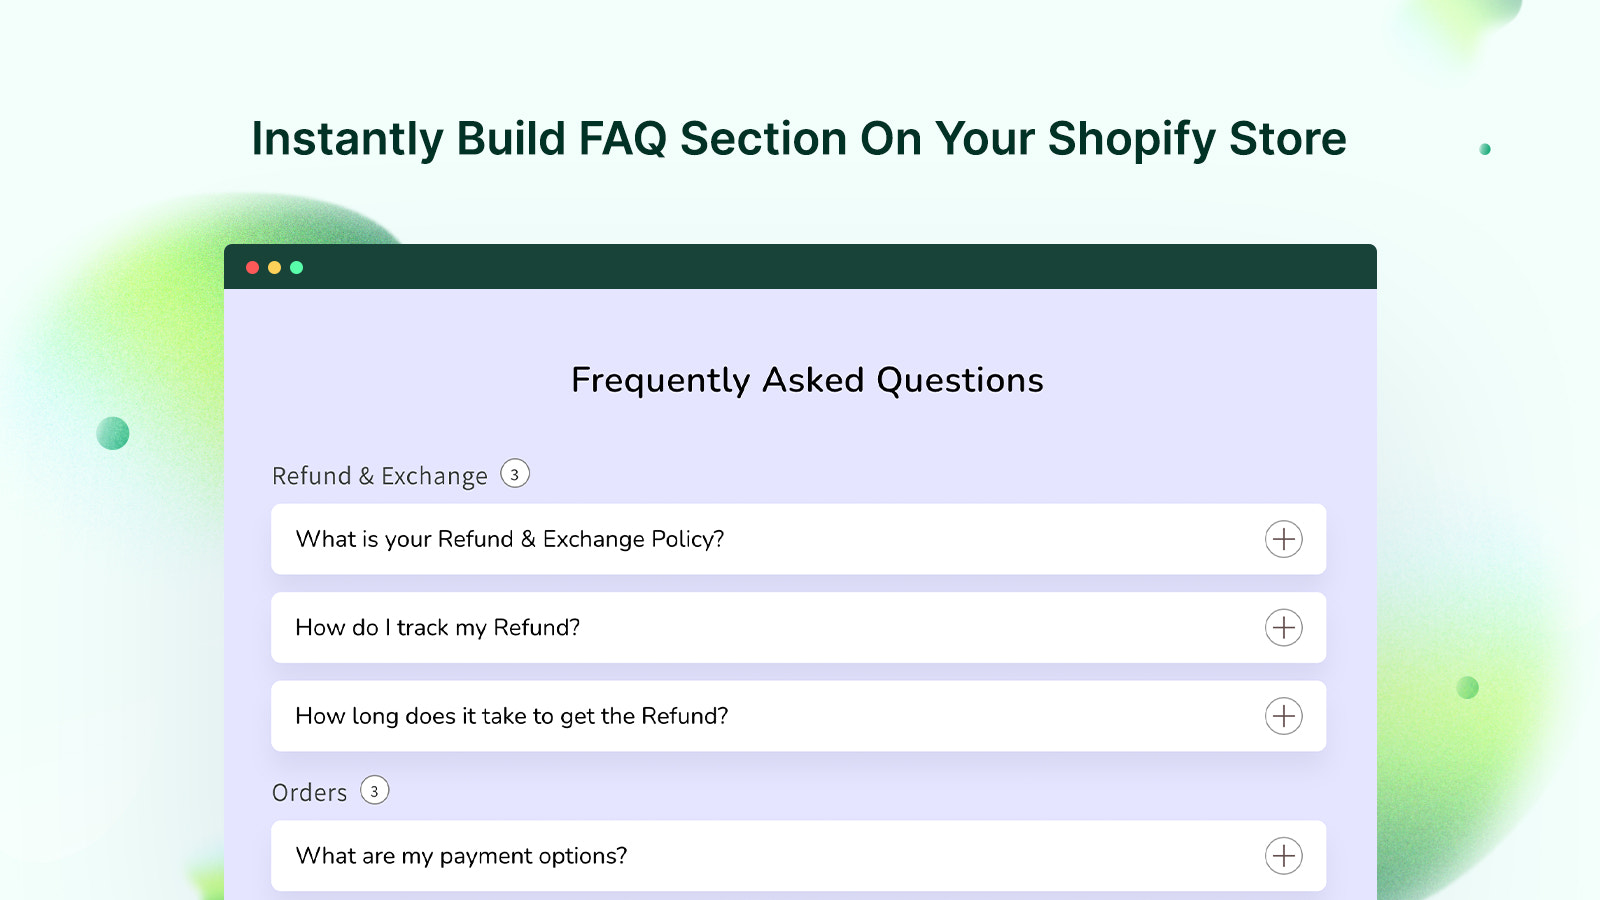 Construya al Instante una Sección de Preguntas Frecuentes en su Tienda Shopify